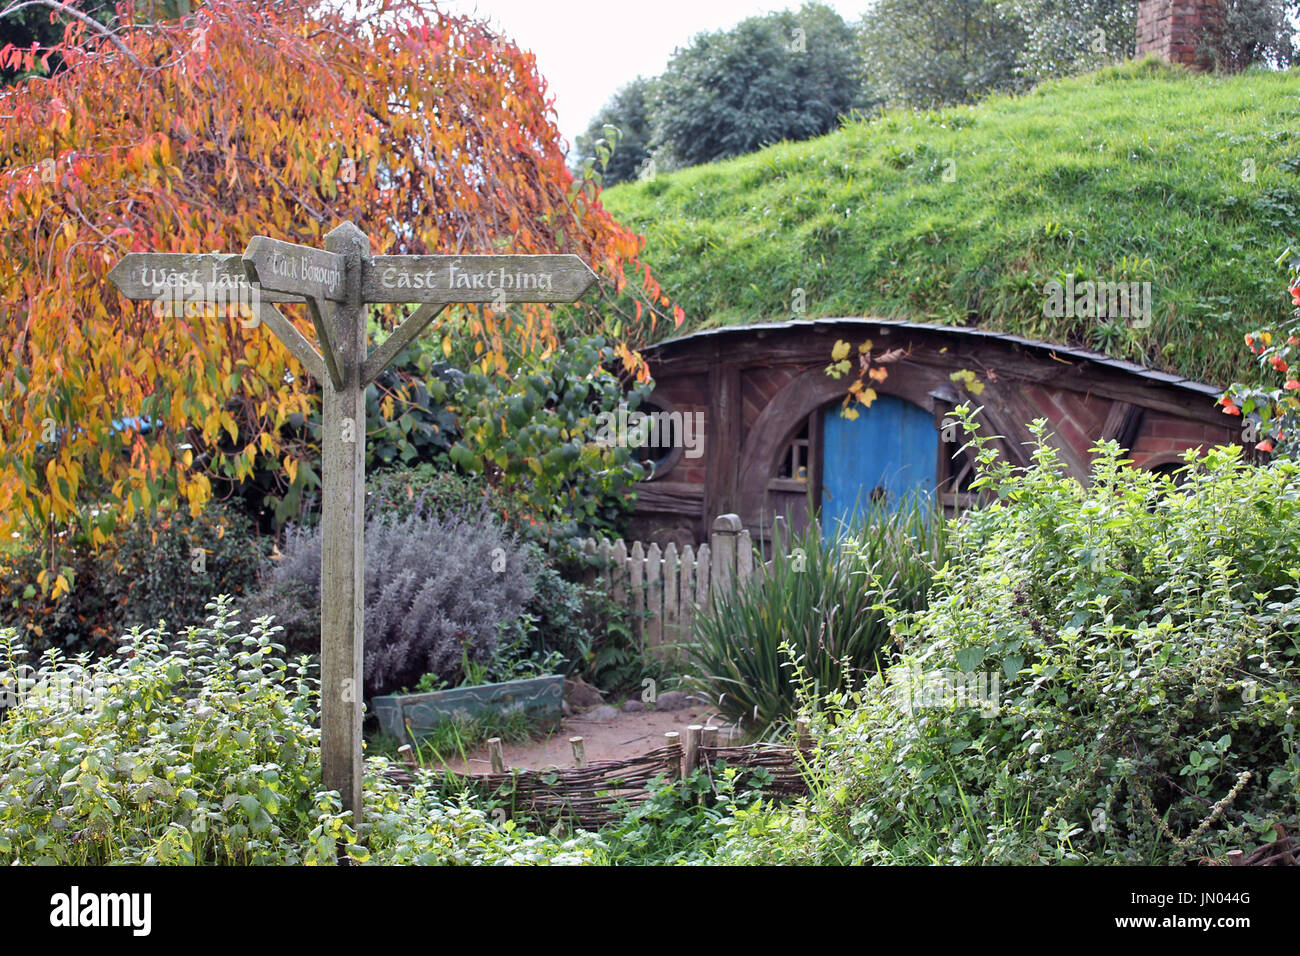 Ein Hobbit Haus aus Hobbingen Film eingestellt, wie in dem Film Herr der Ringe enthalten. Stockfoto